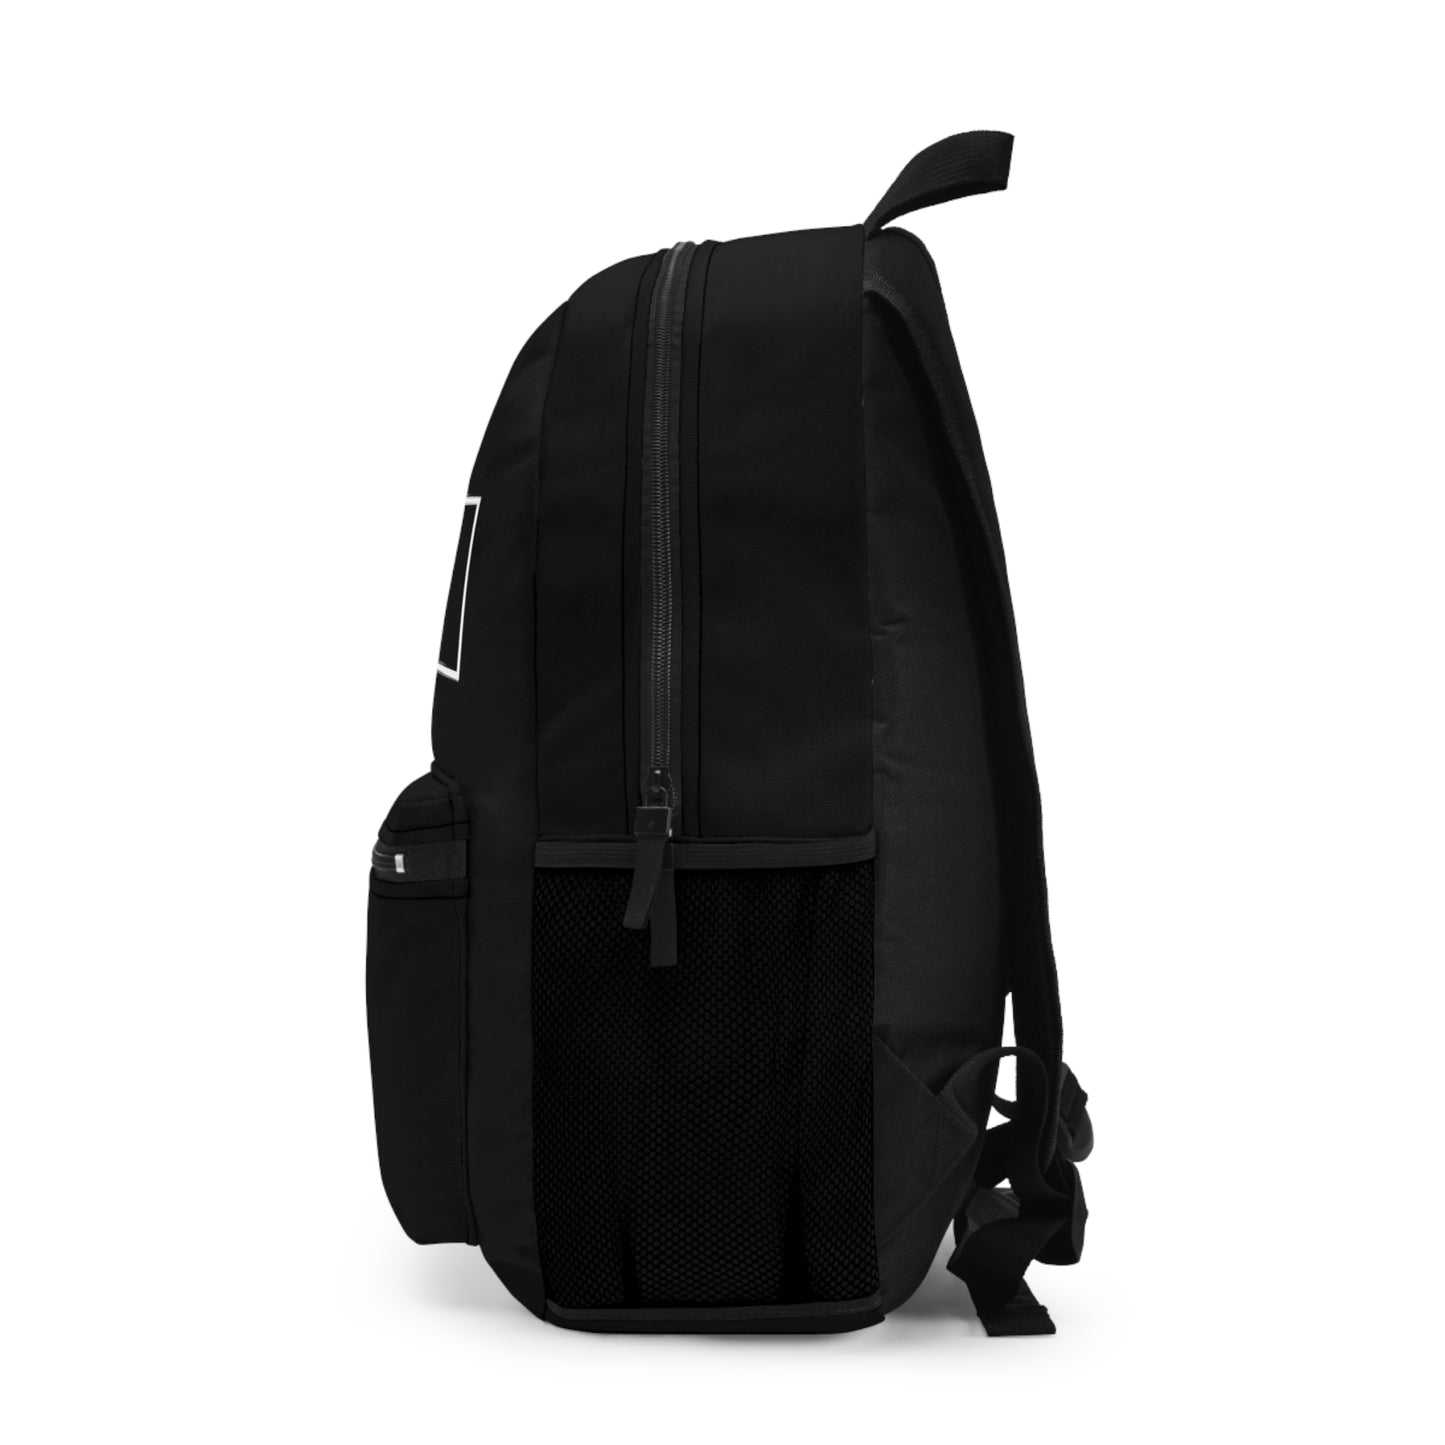 “Alumni” Backpack